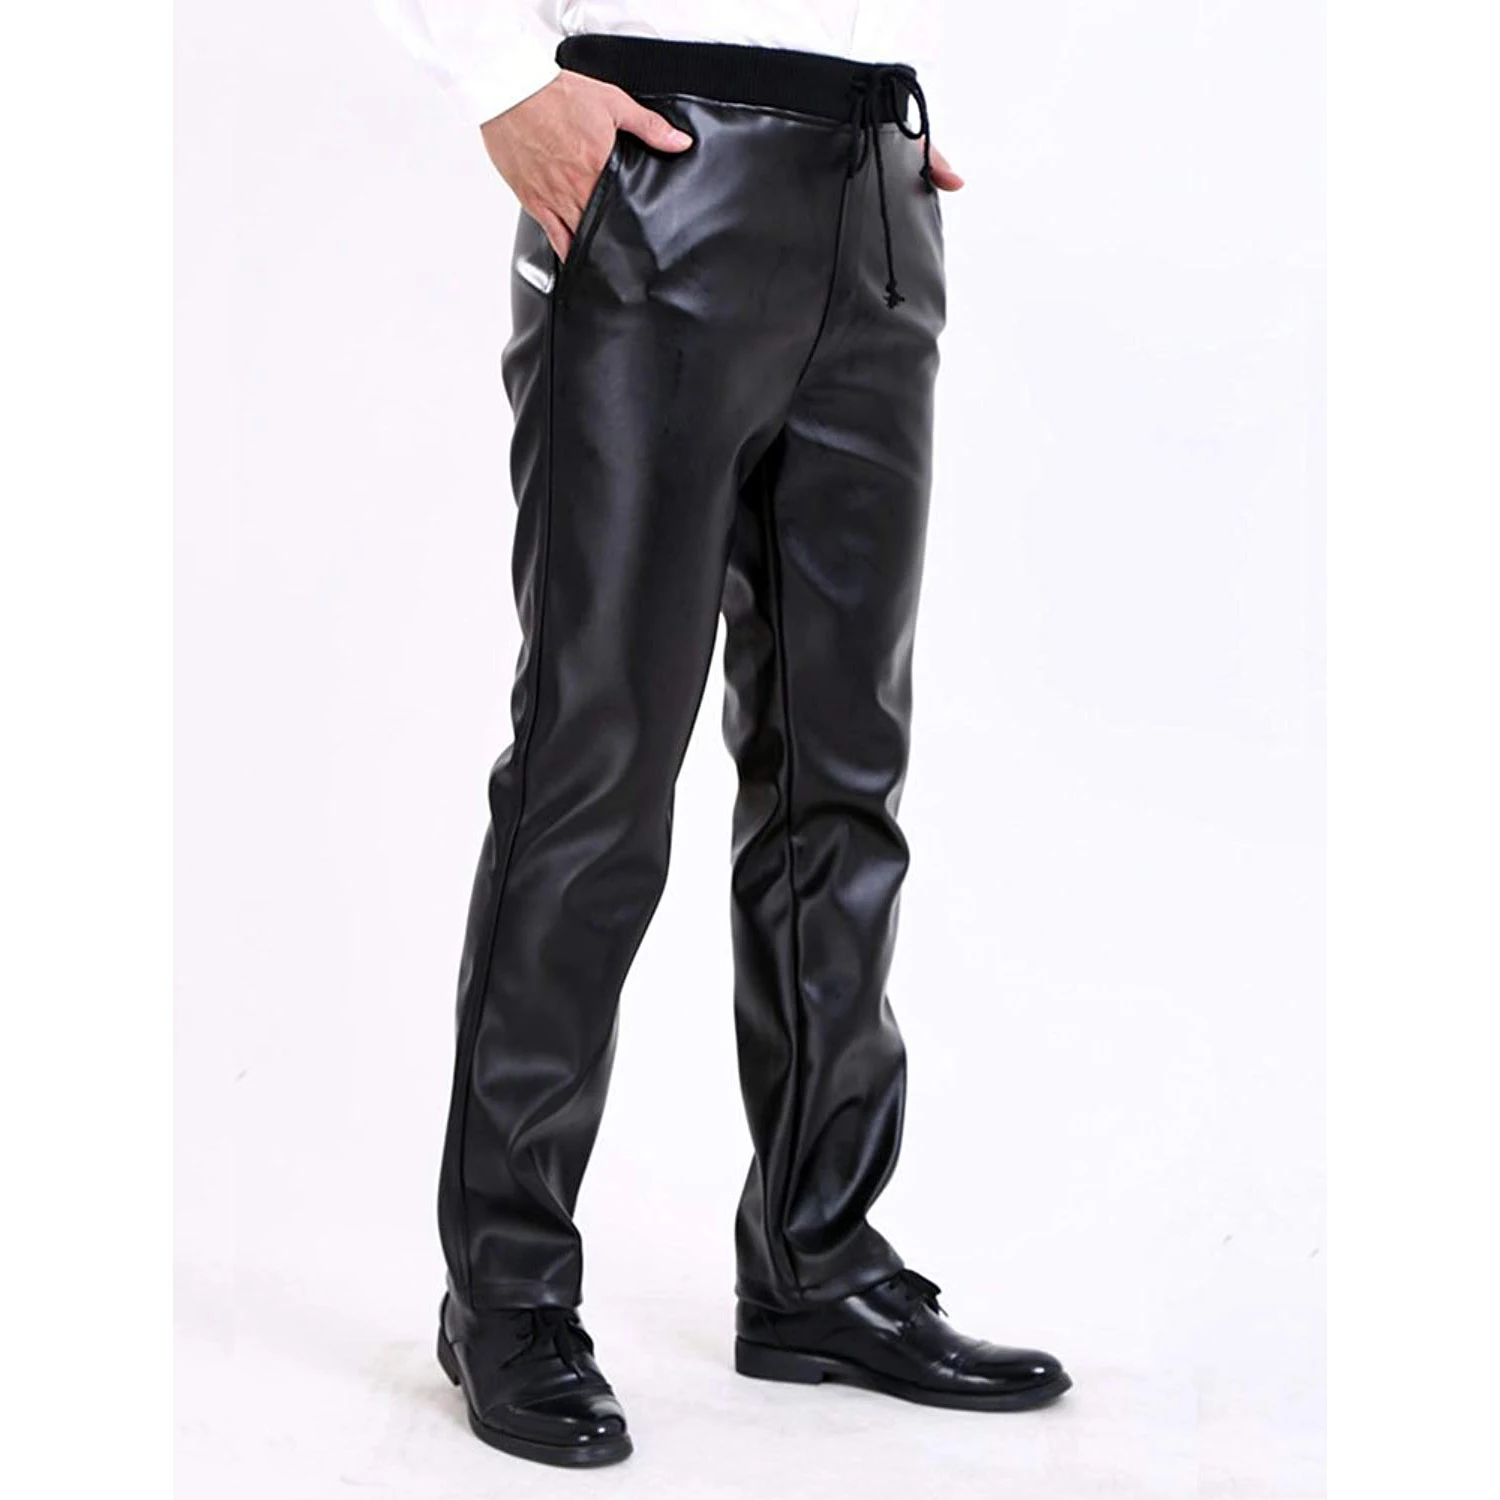 Idopy Для Мужчин's Бизнес Slim Fit эластичные удобные черные Искусственная кожа штаны джинсы брюки-Слаксы с кулиской для Для мужчин